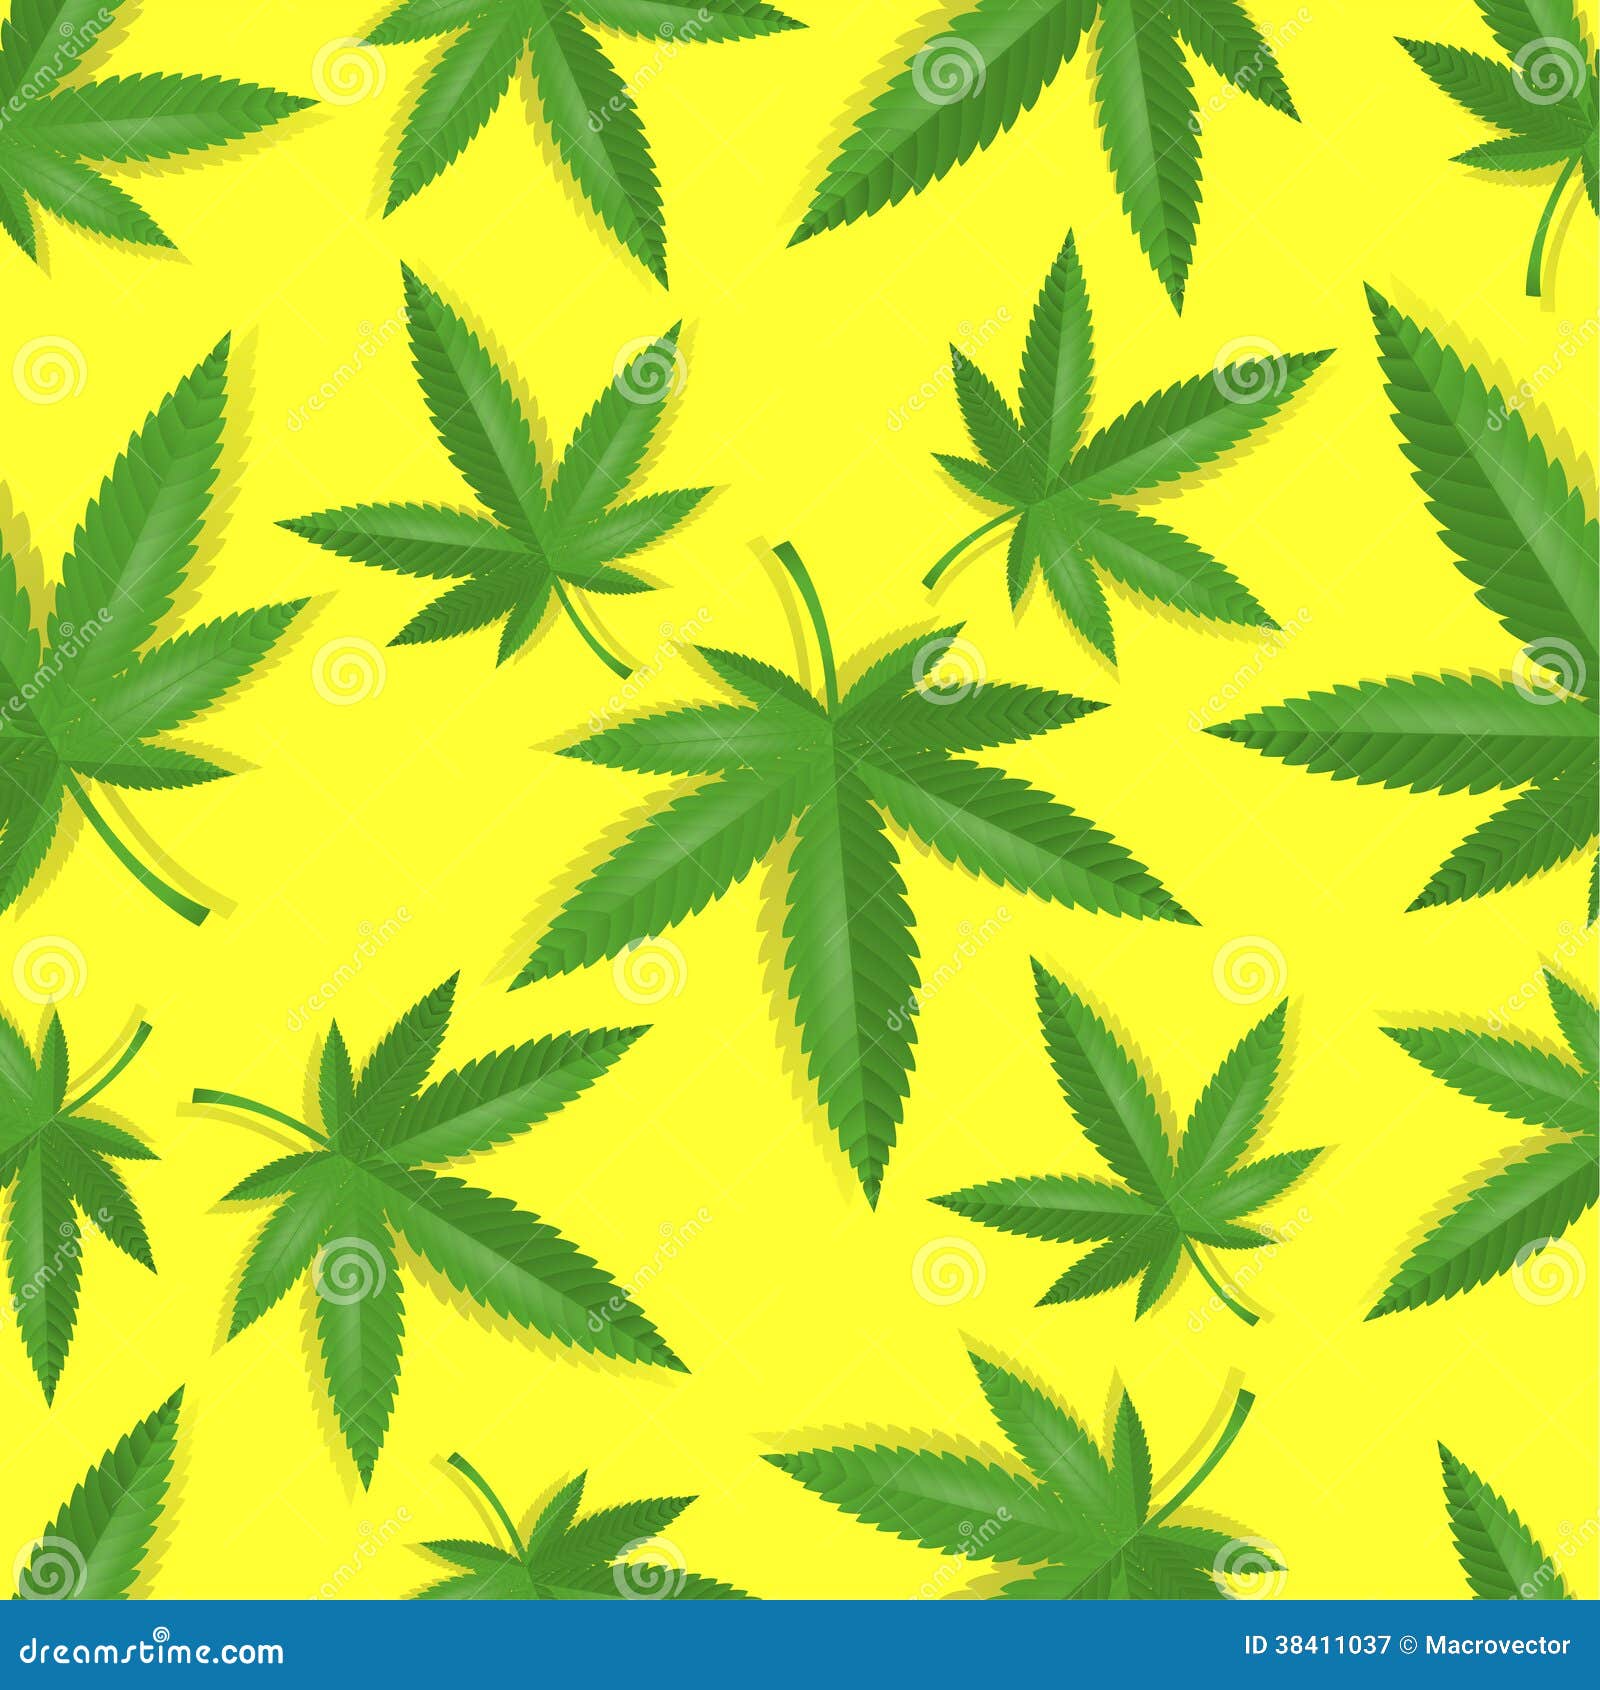 Картину конопля марихуана сеед